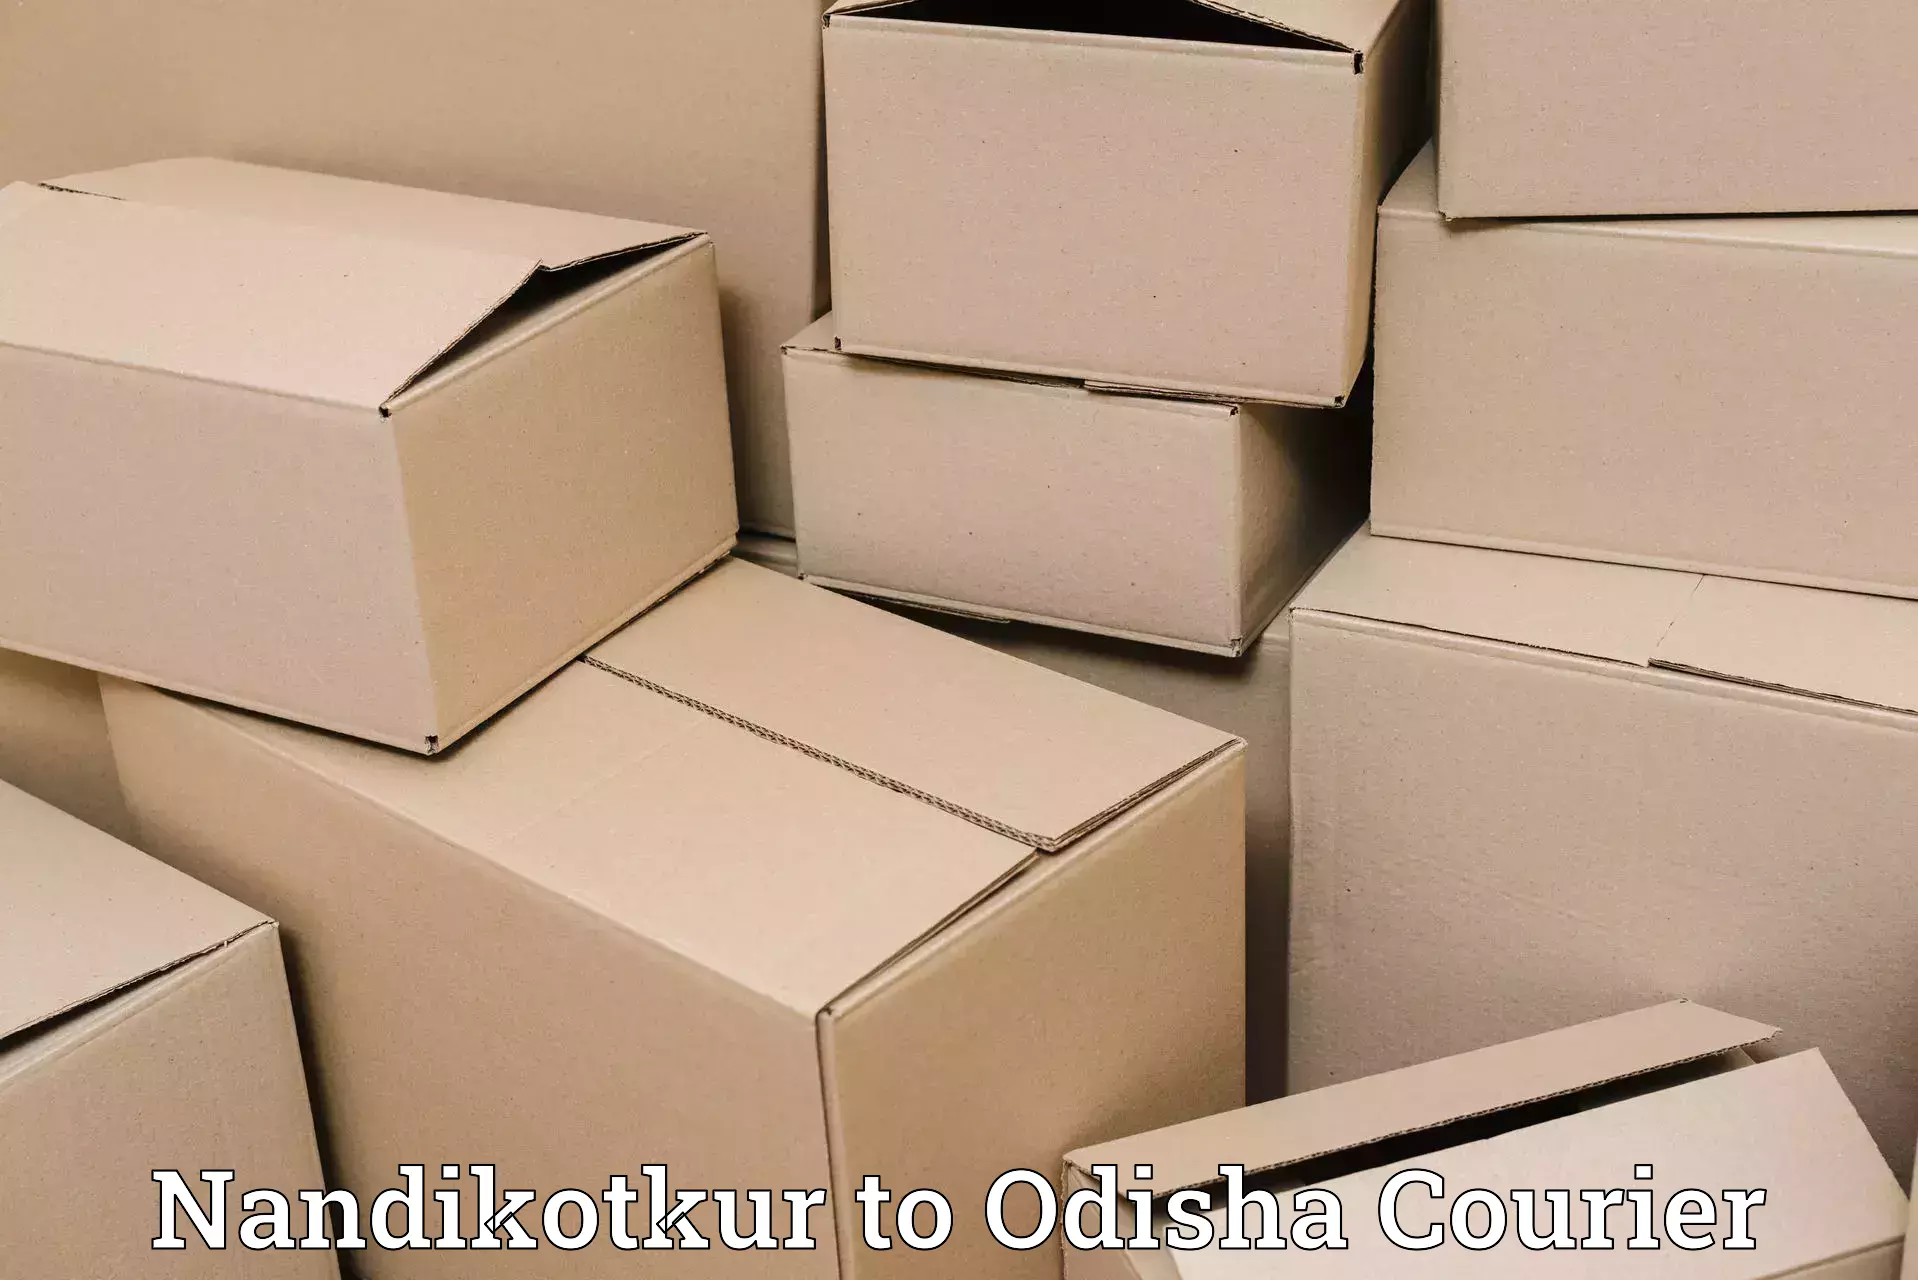 Urban courier service Nandikotkur to Puranakatak